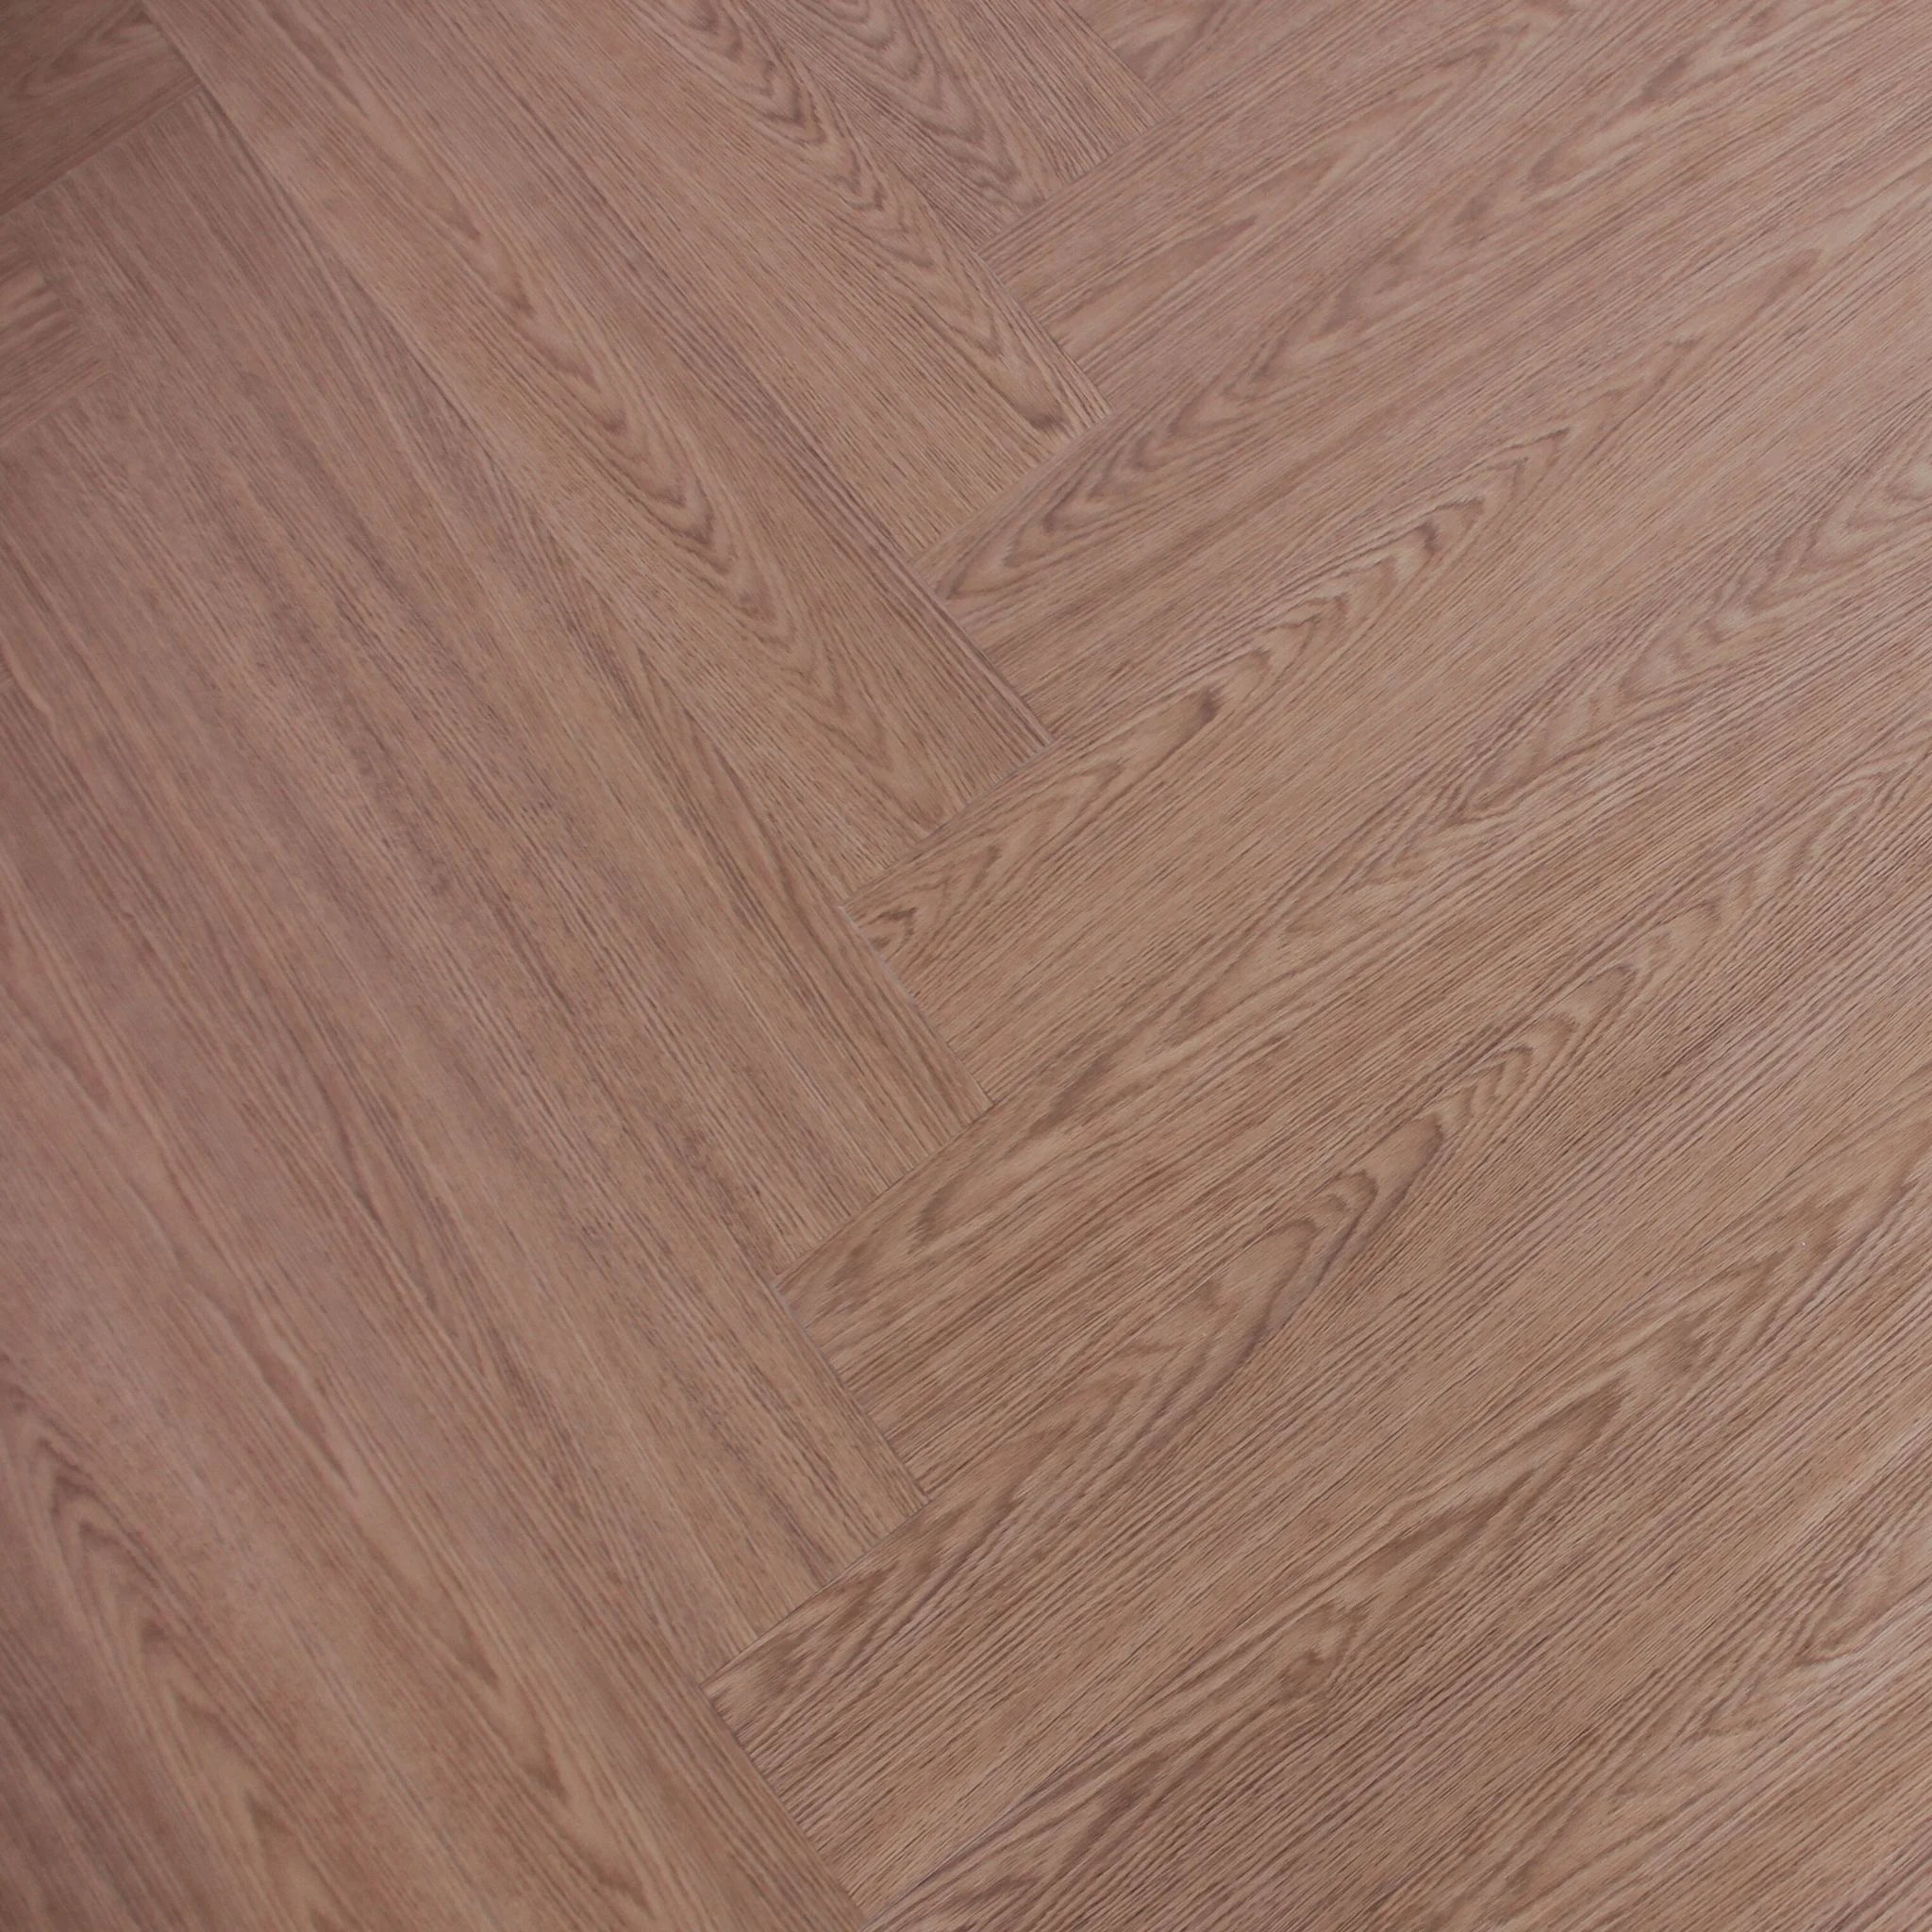 herringbone patterned wood effect vinyl flooring in a rich brown tone